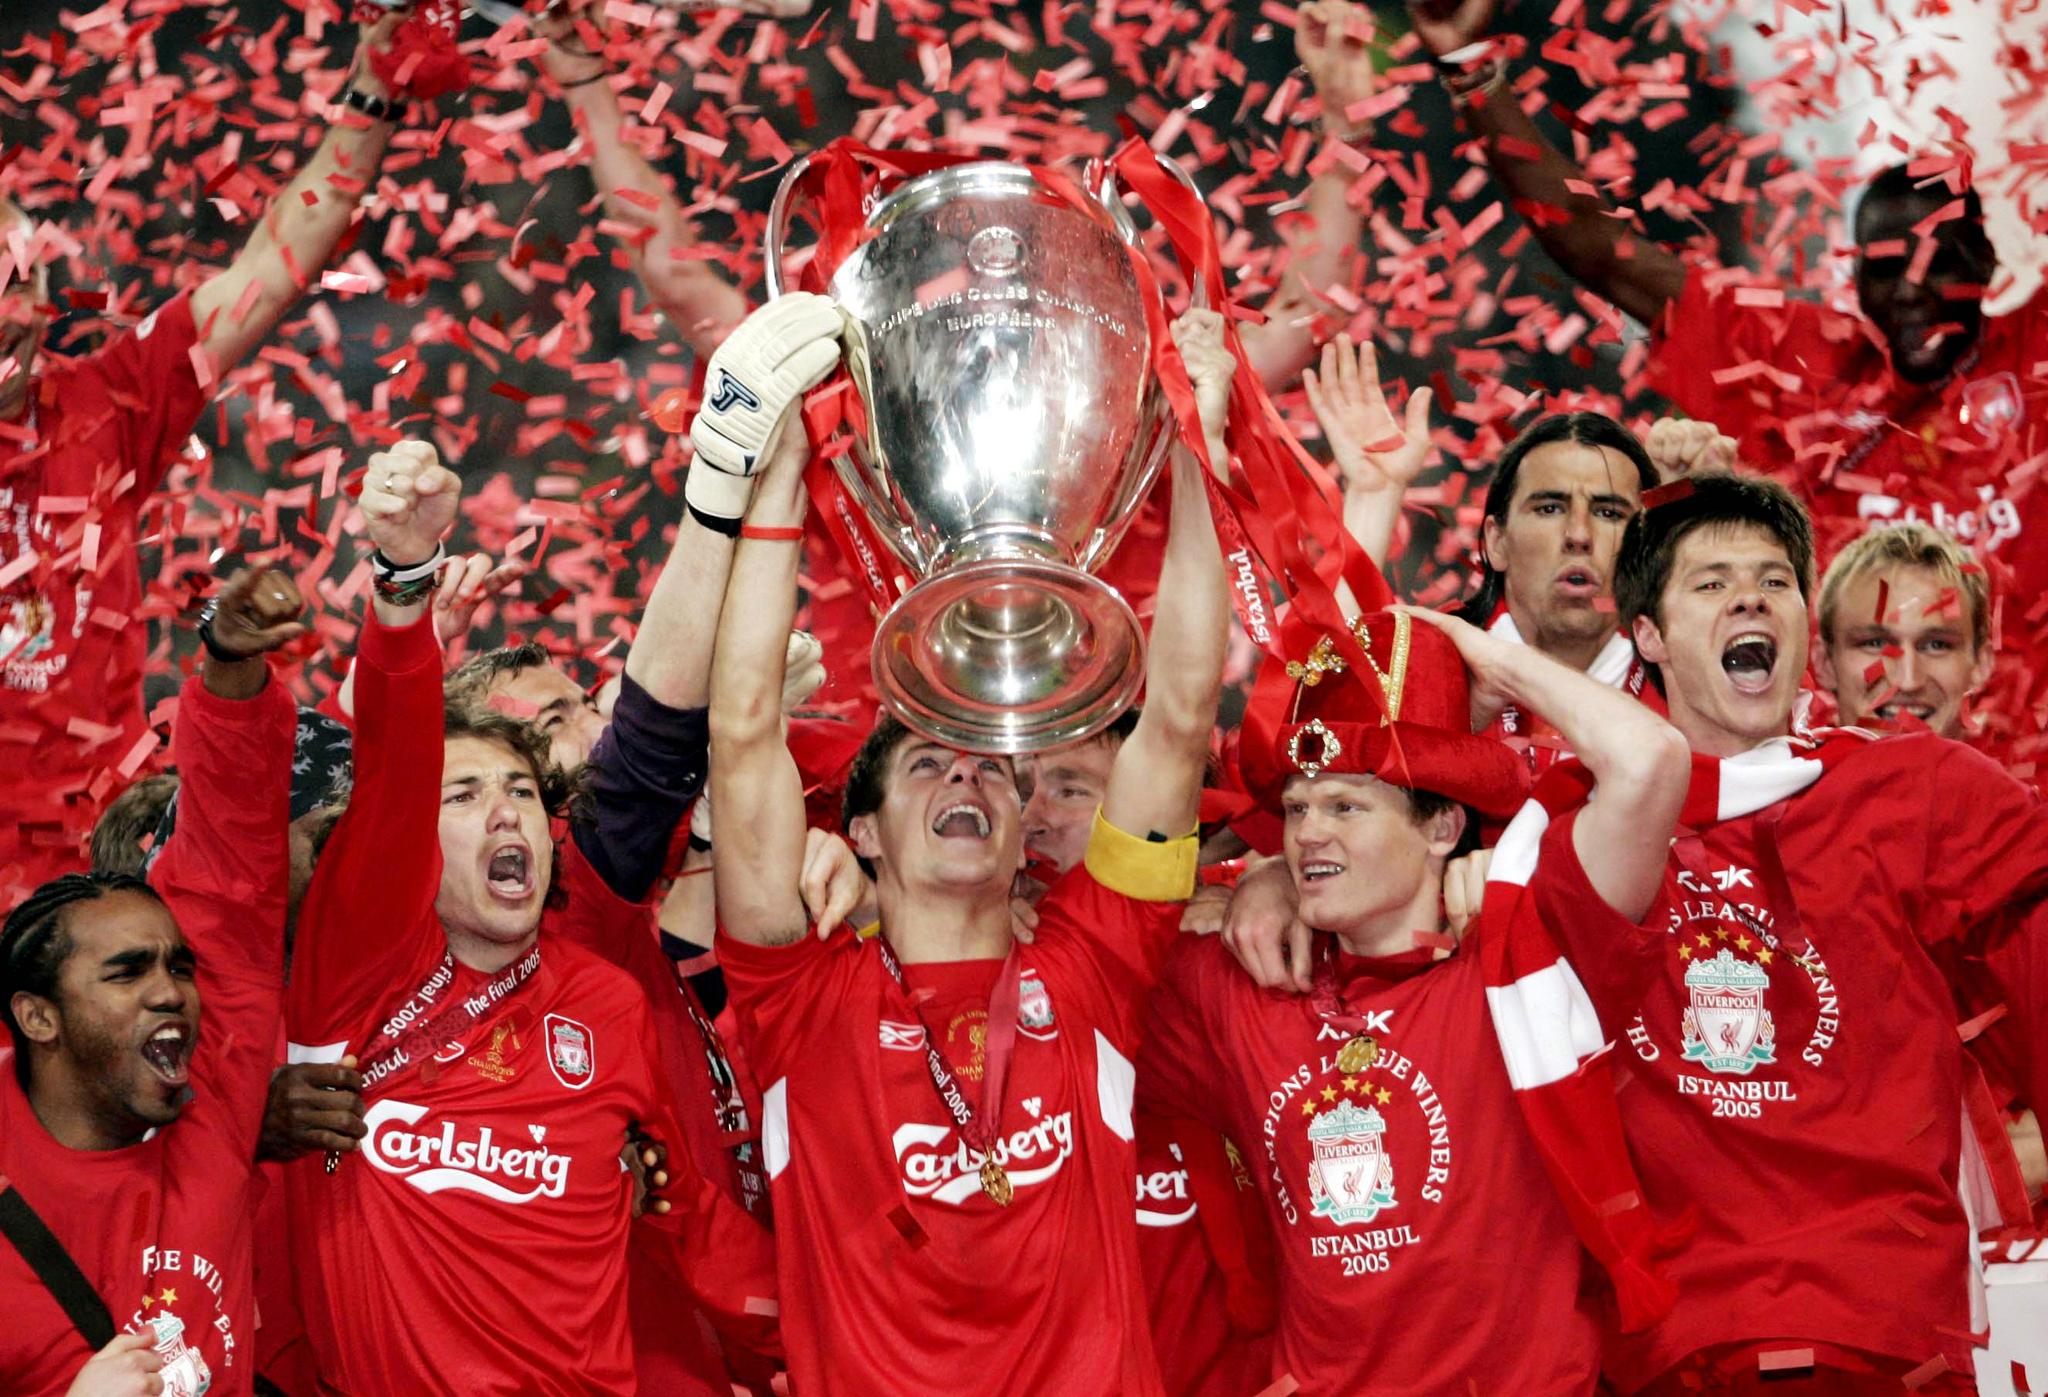 Steven Gerrard løfter trofeet mens John Arne Riise (til høyre) er med på feiringen av Champions League-triumfen i 2005.